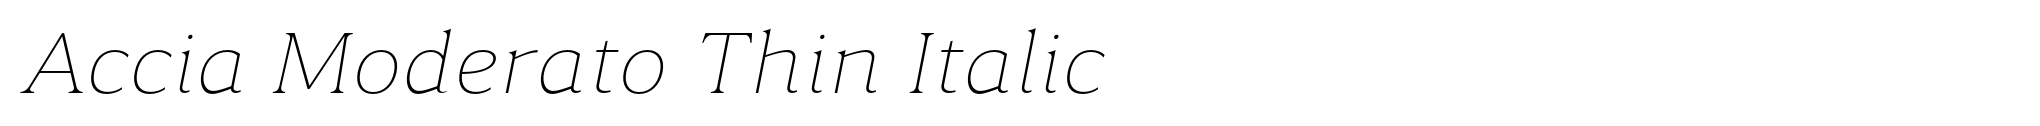 Accia Moderato Thin Italic image